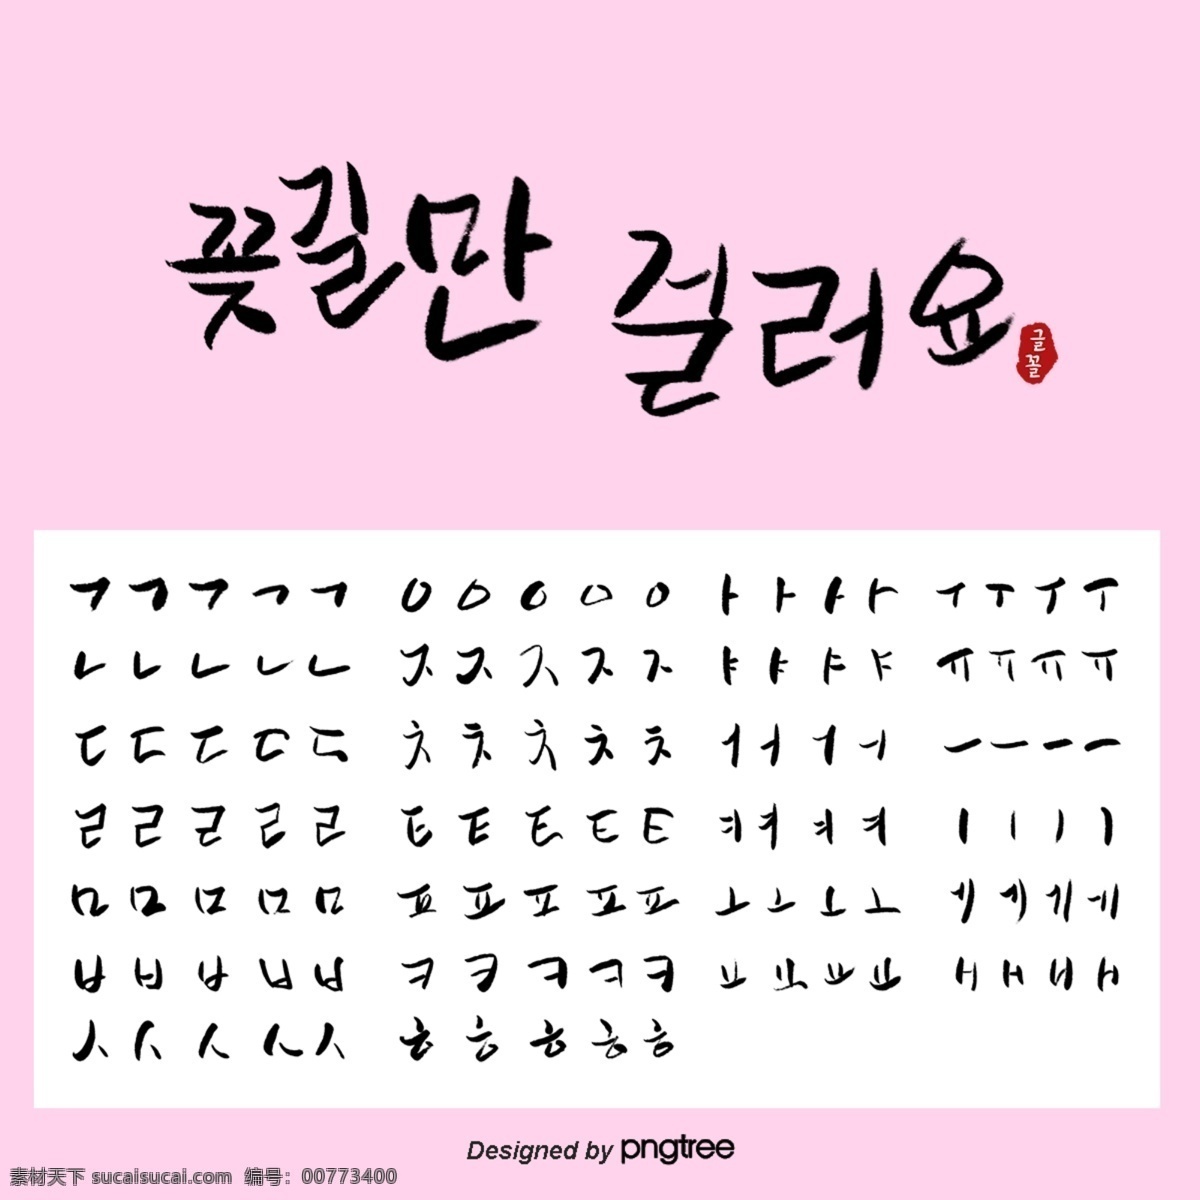 粉色 创意 韩语 书法 笔画 笔画拆分 韩语笔画 书法笔画